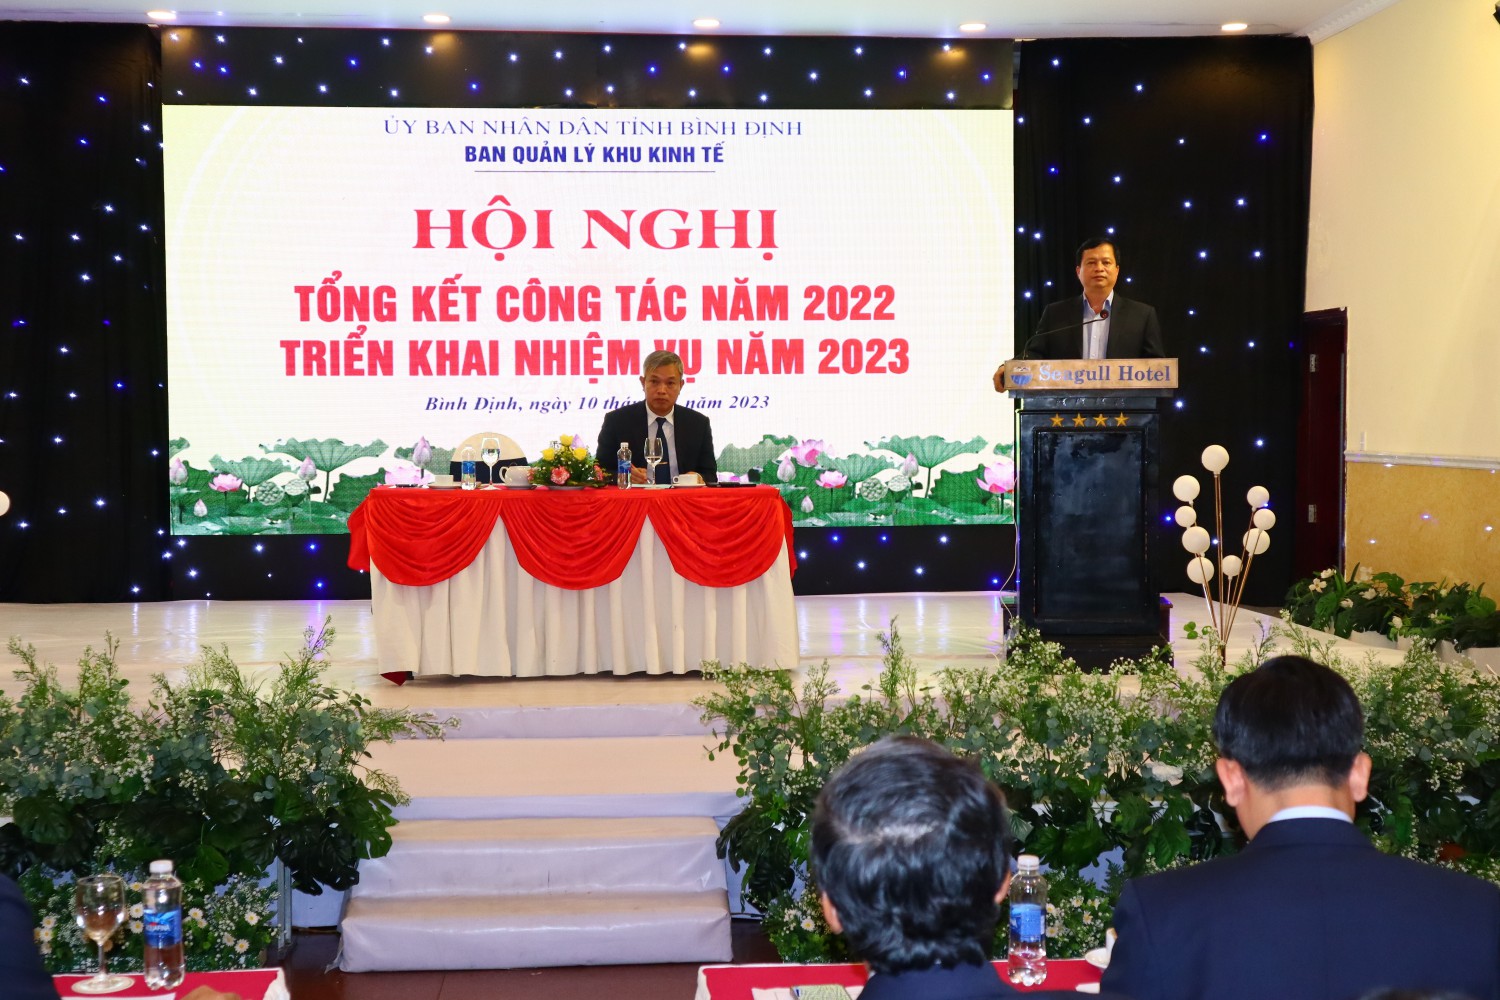 Hội nghị tổng kết tình hình hoạt động năm 2022 và triển khai nhiệm vụ năm 2023 tại Ban Quản lý Khu kinh tế tỉnh